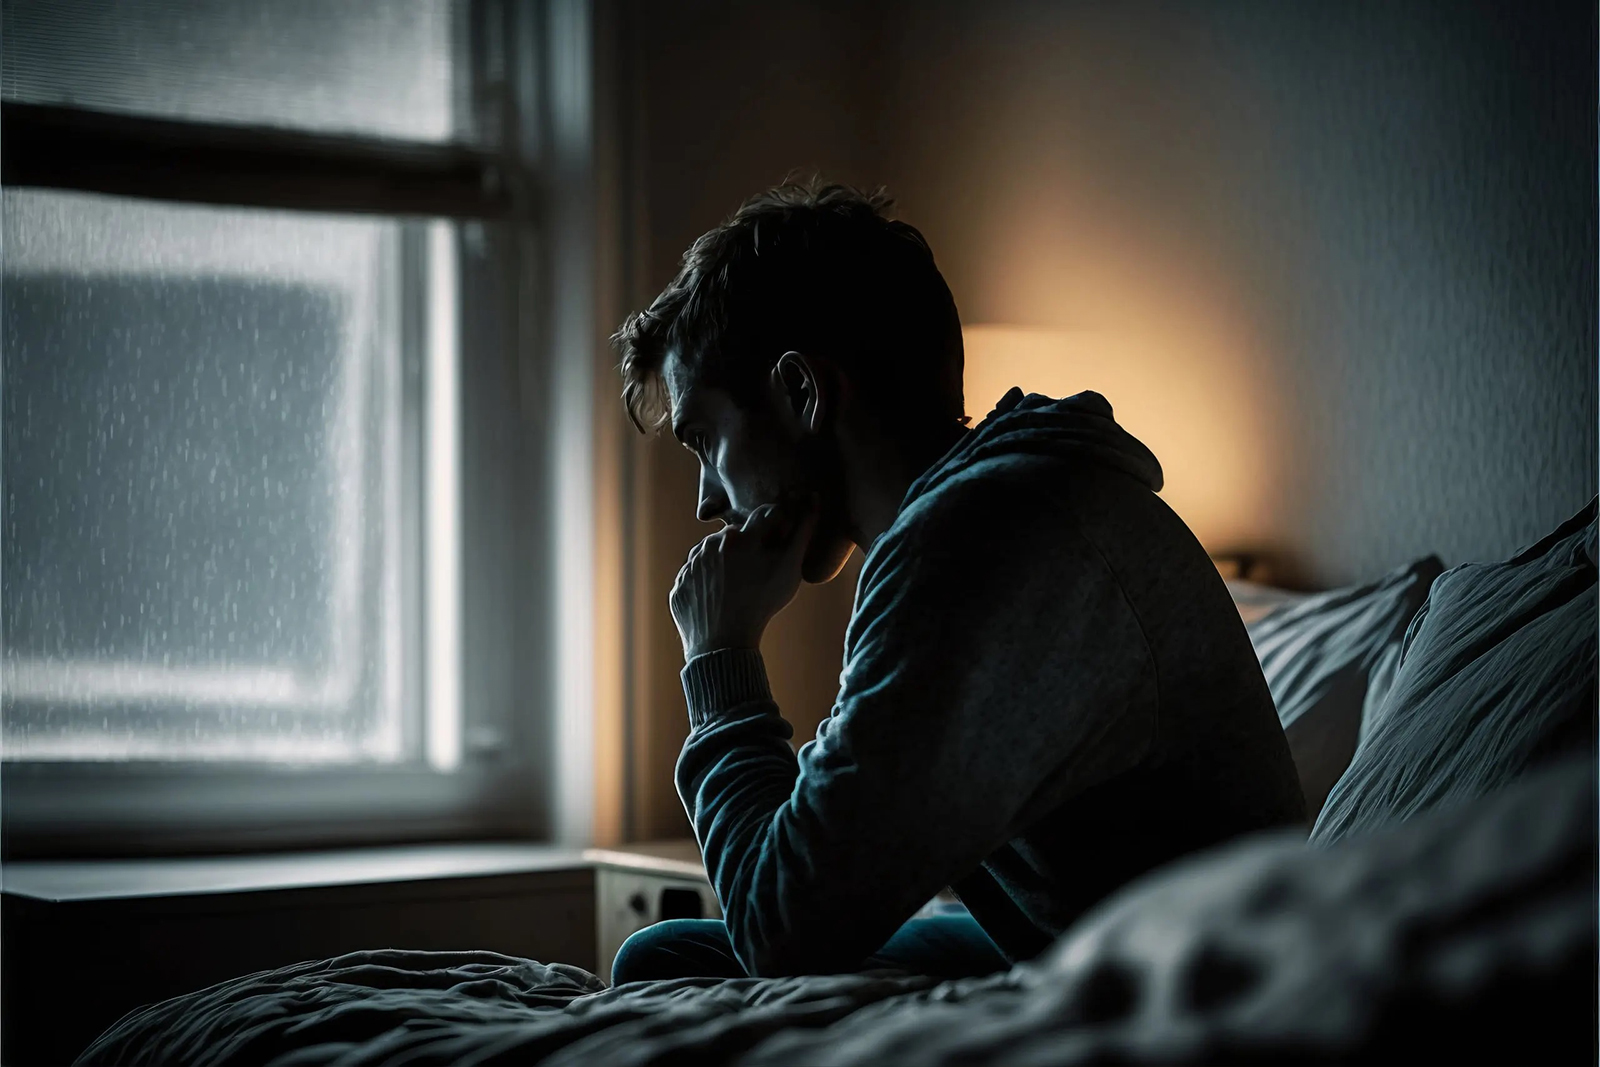 دراسة علمية حديثة: الحرمان من النوم قد يعالج الاكتئاب